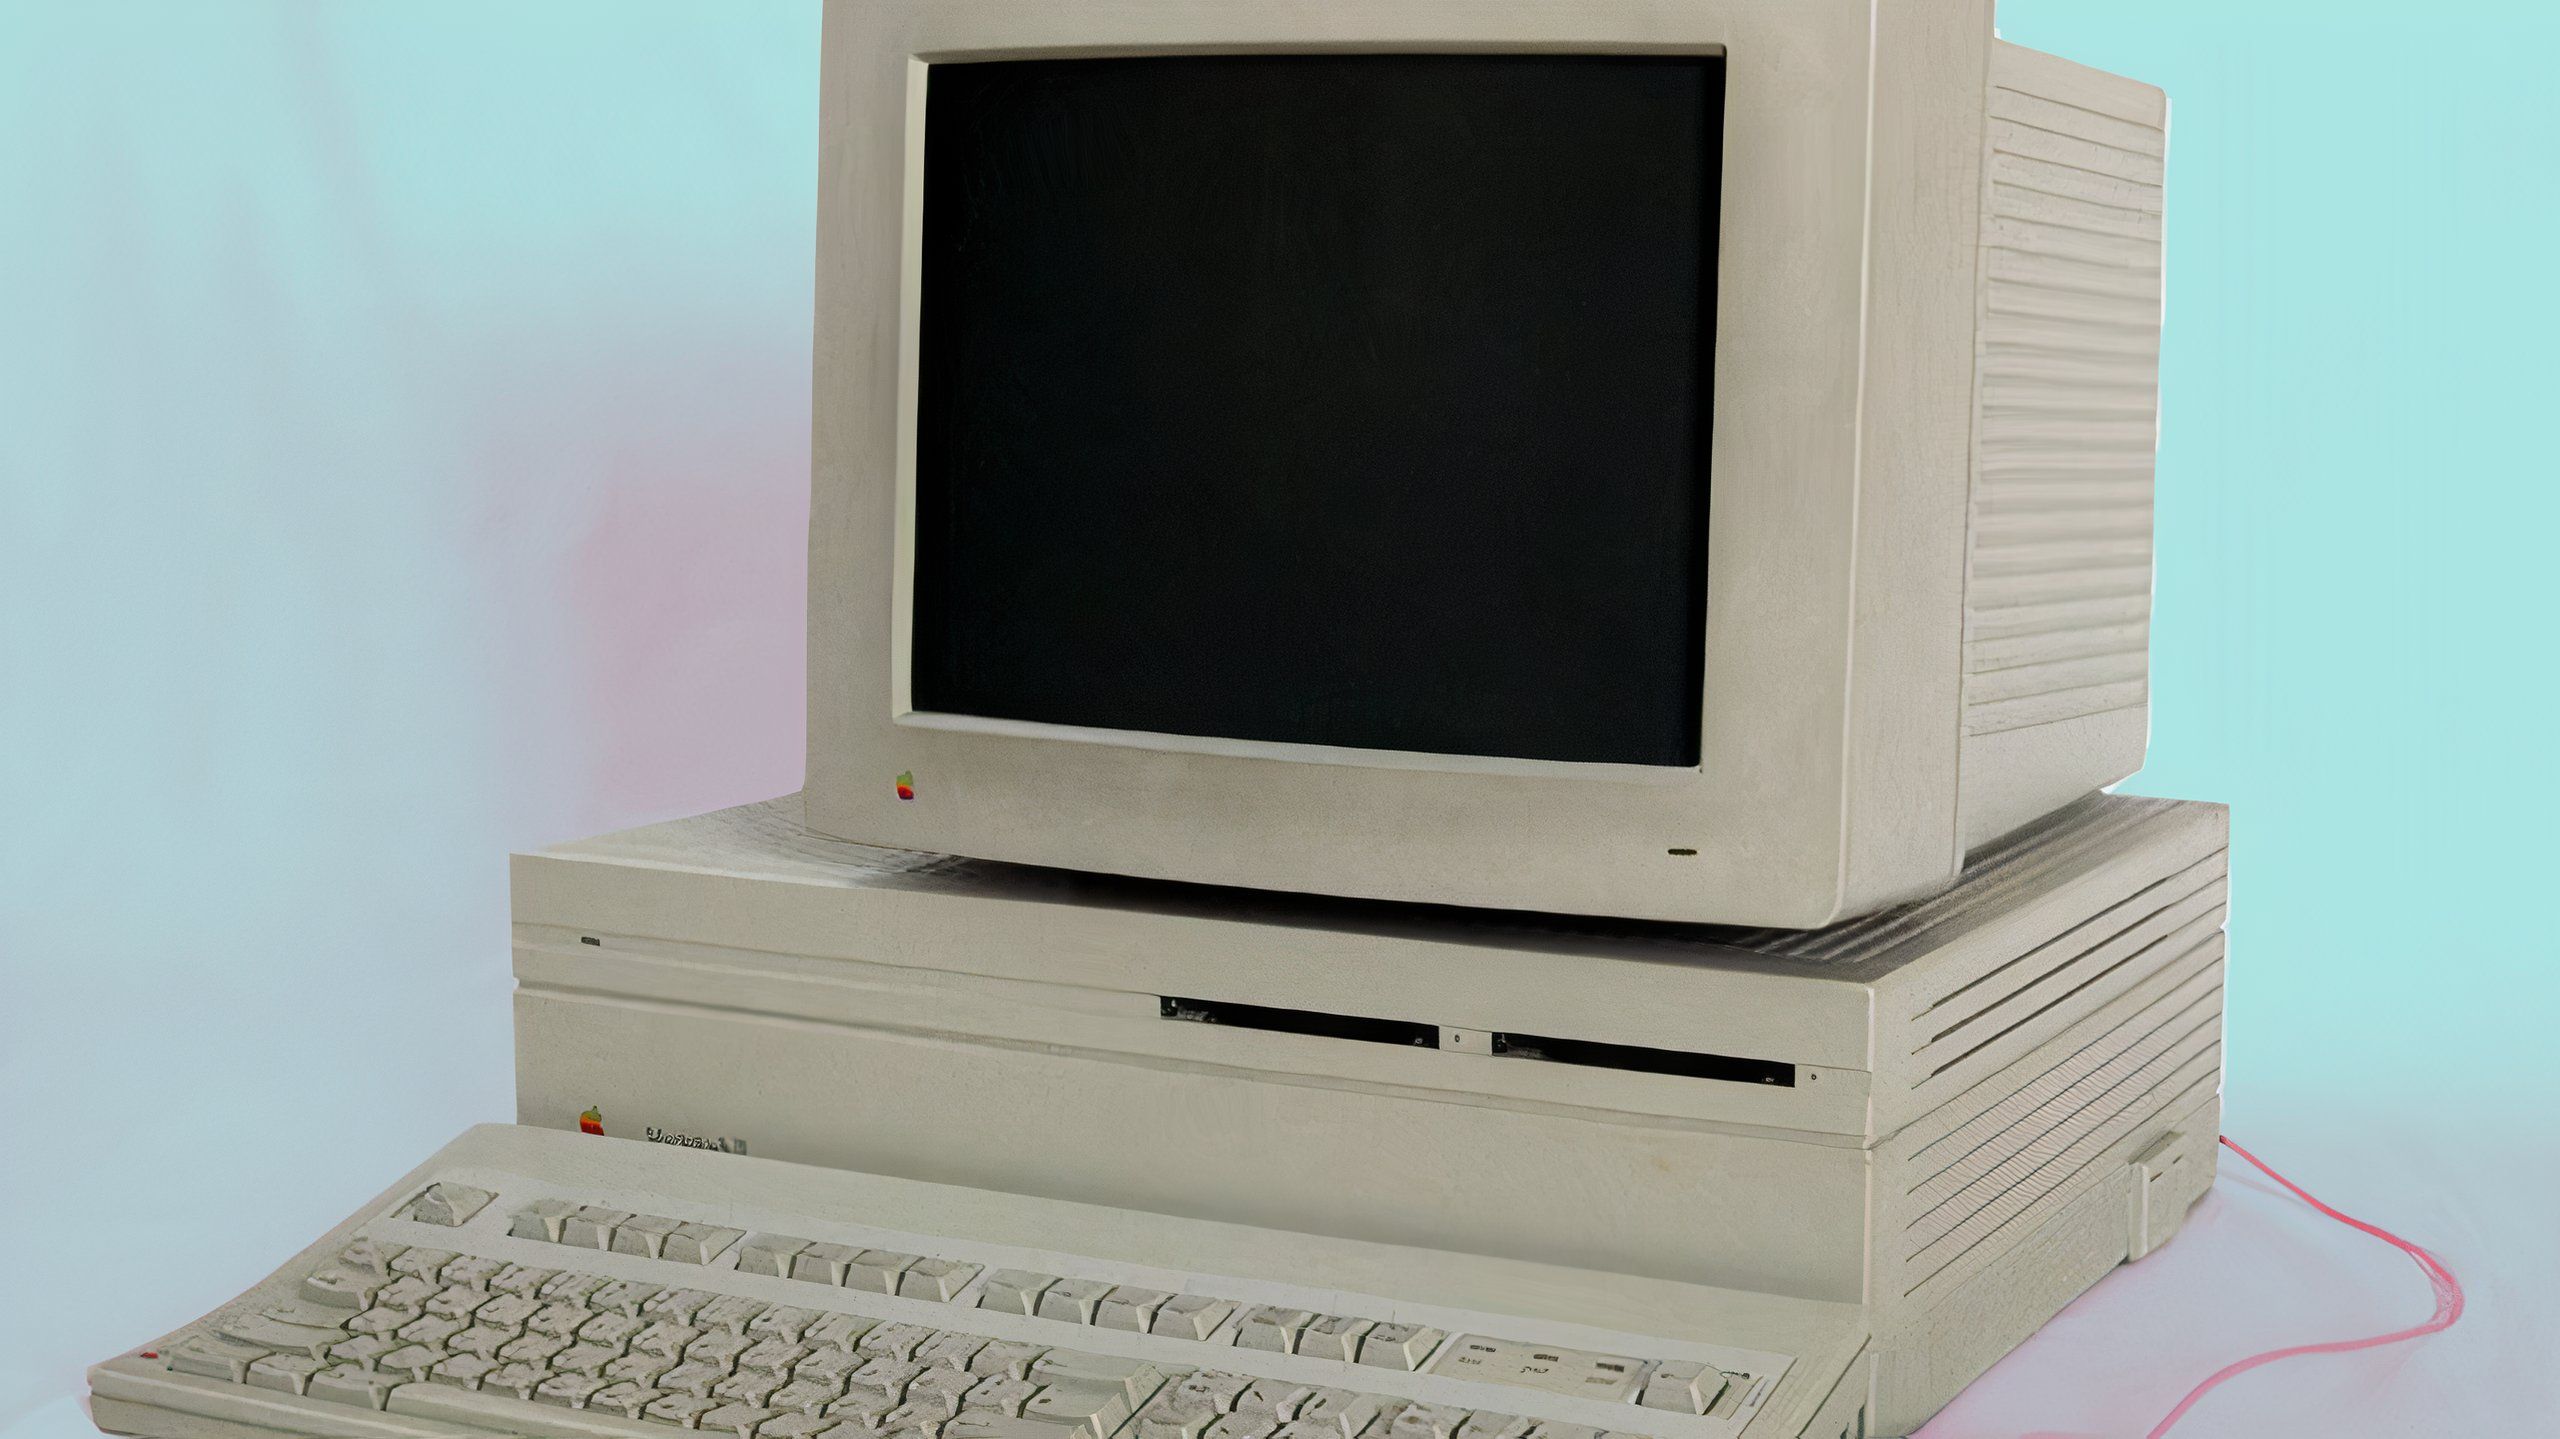 Mac 2 Computer